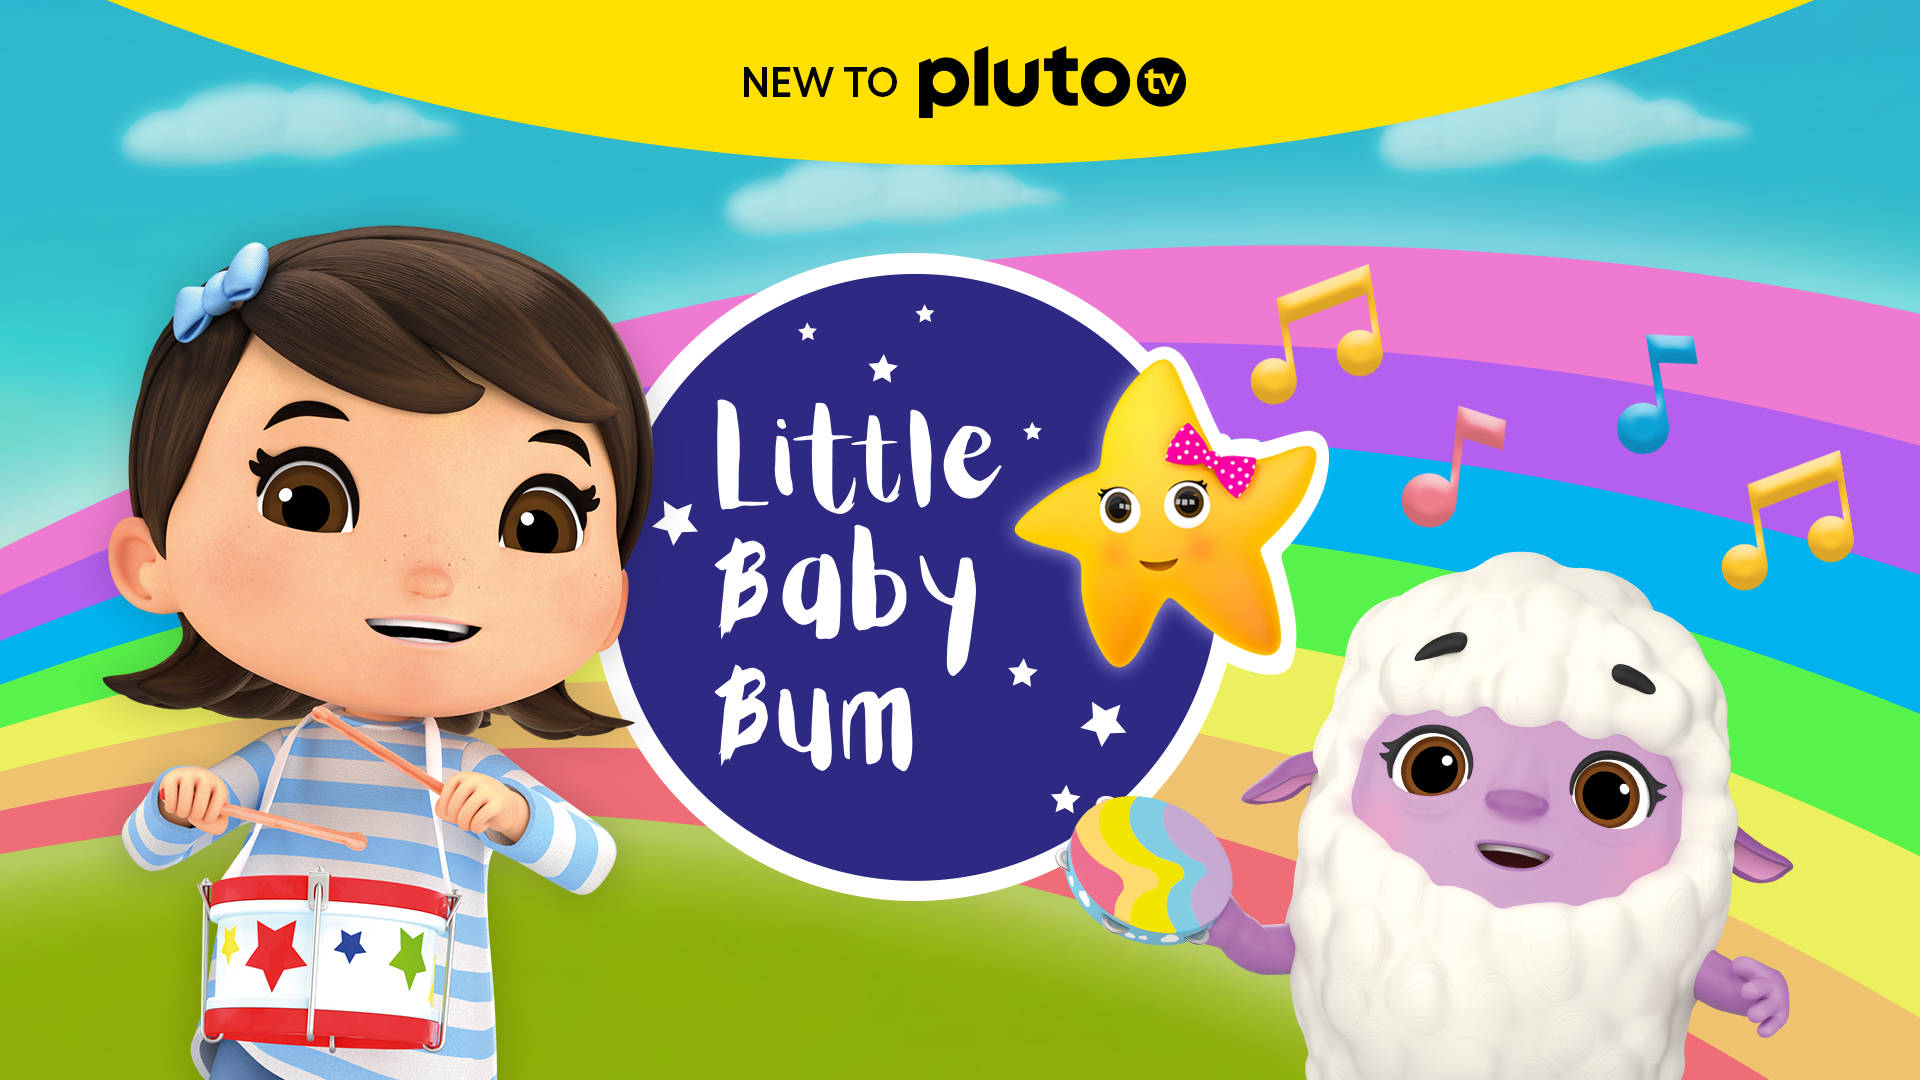 Lillababy Bum Ny Till Pluto. Wallpaper